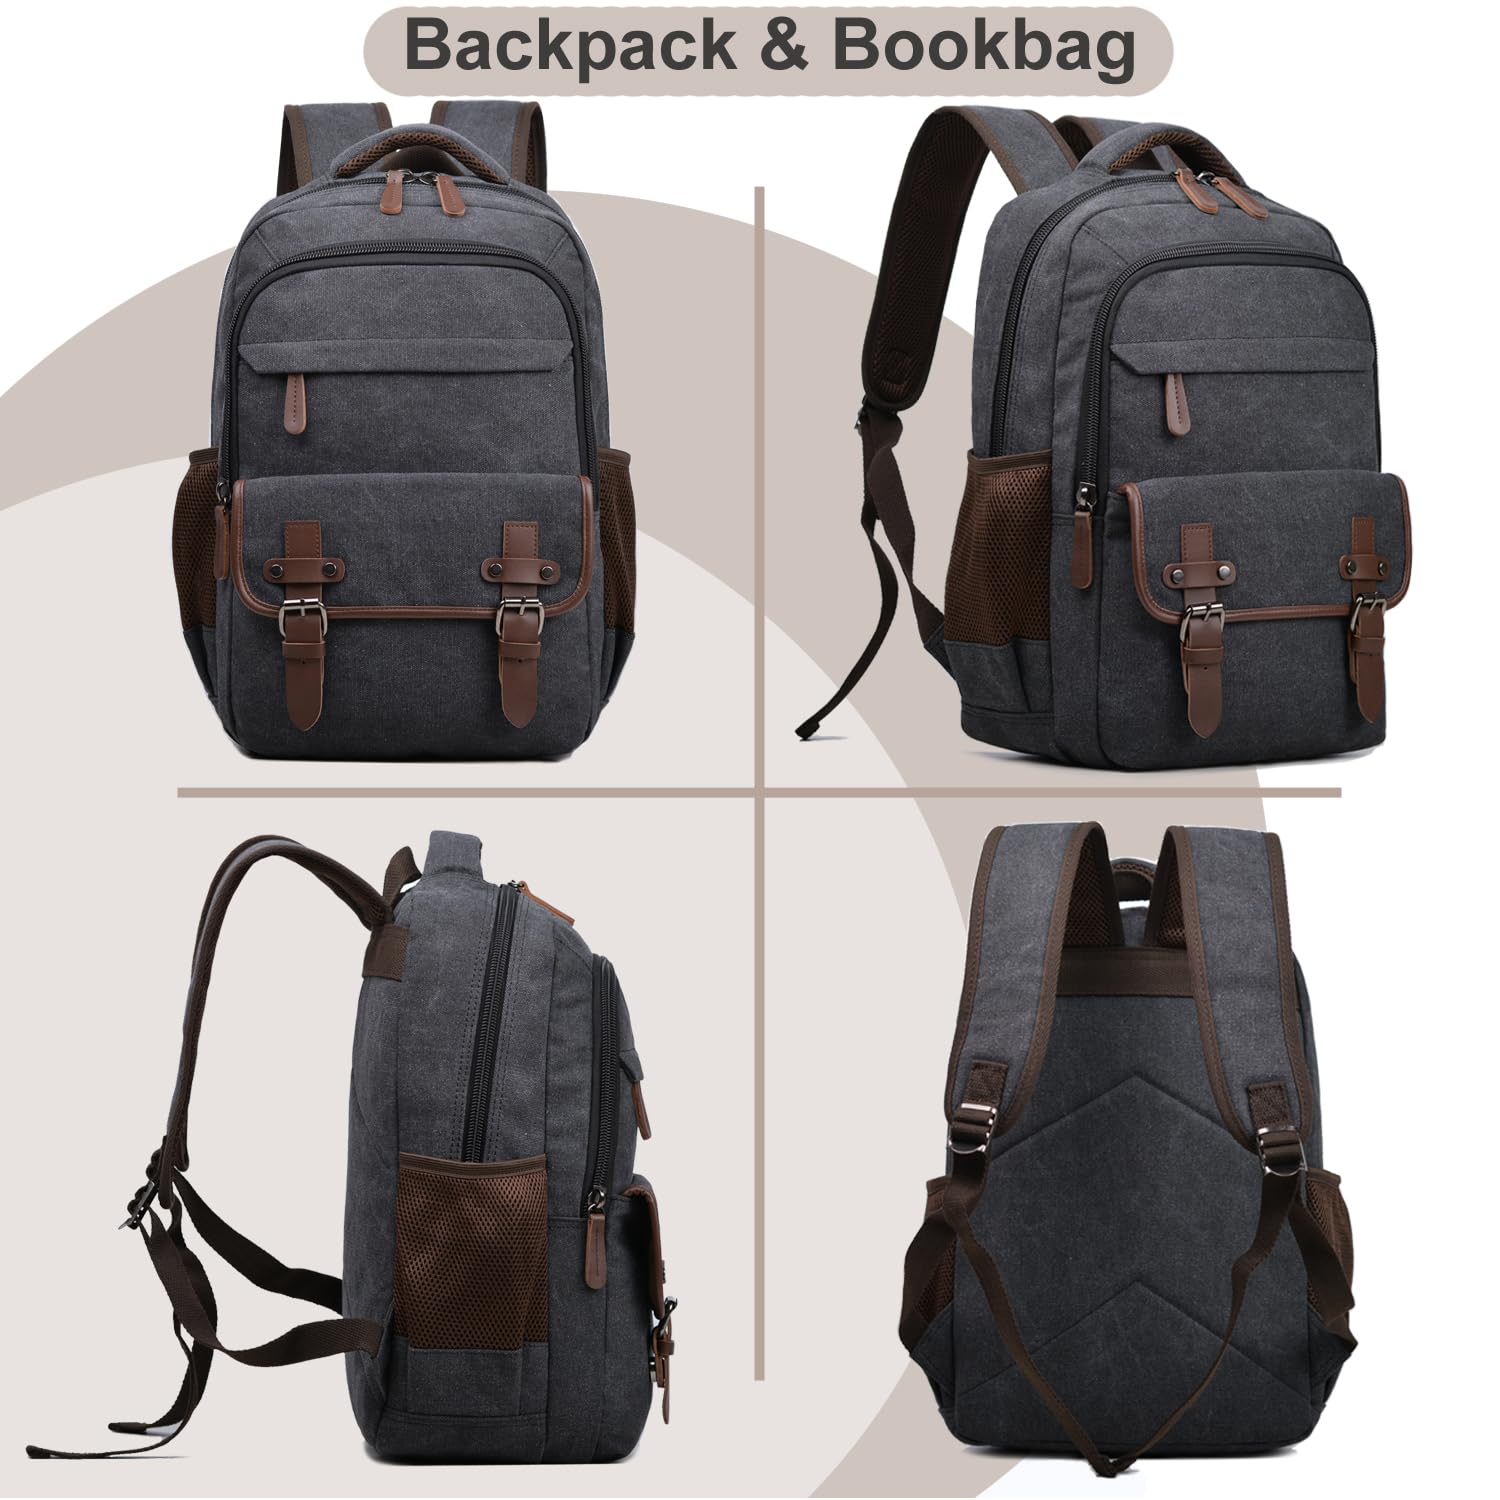 Canvas Laptop Backpack, Vintage Daypack for Men Women,Travel Work Rucksack College Bookbag Computer Bag Fits 15.6 Inch Laptop (Black)